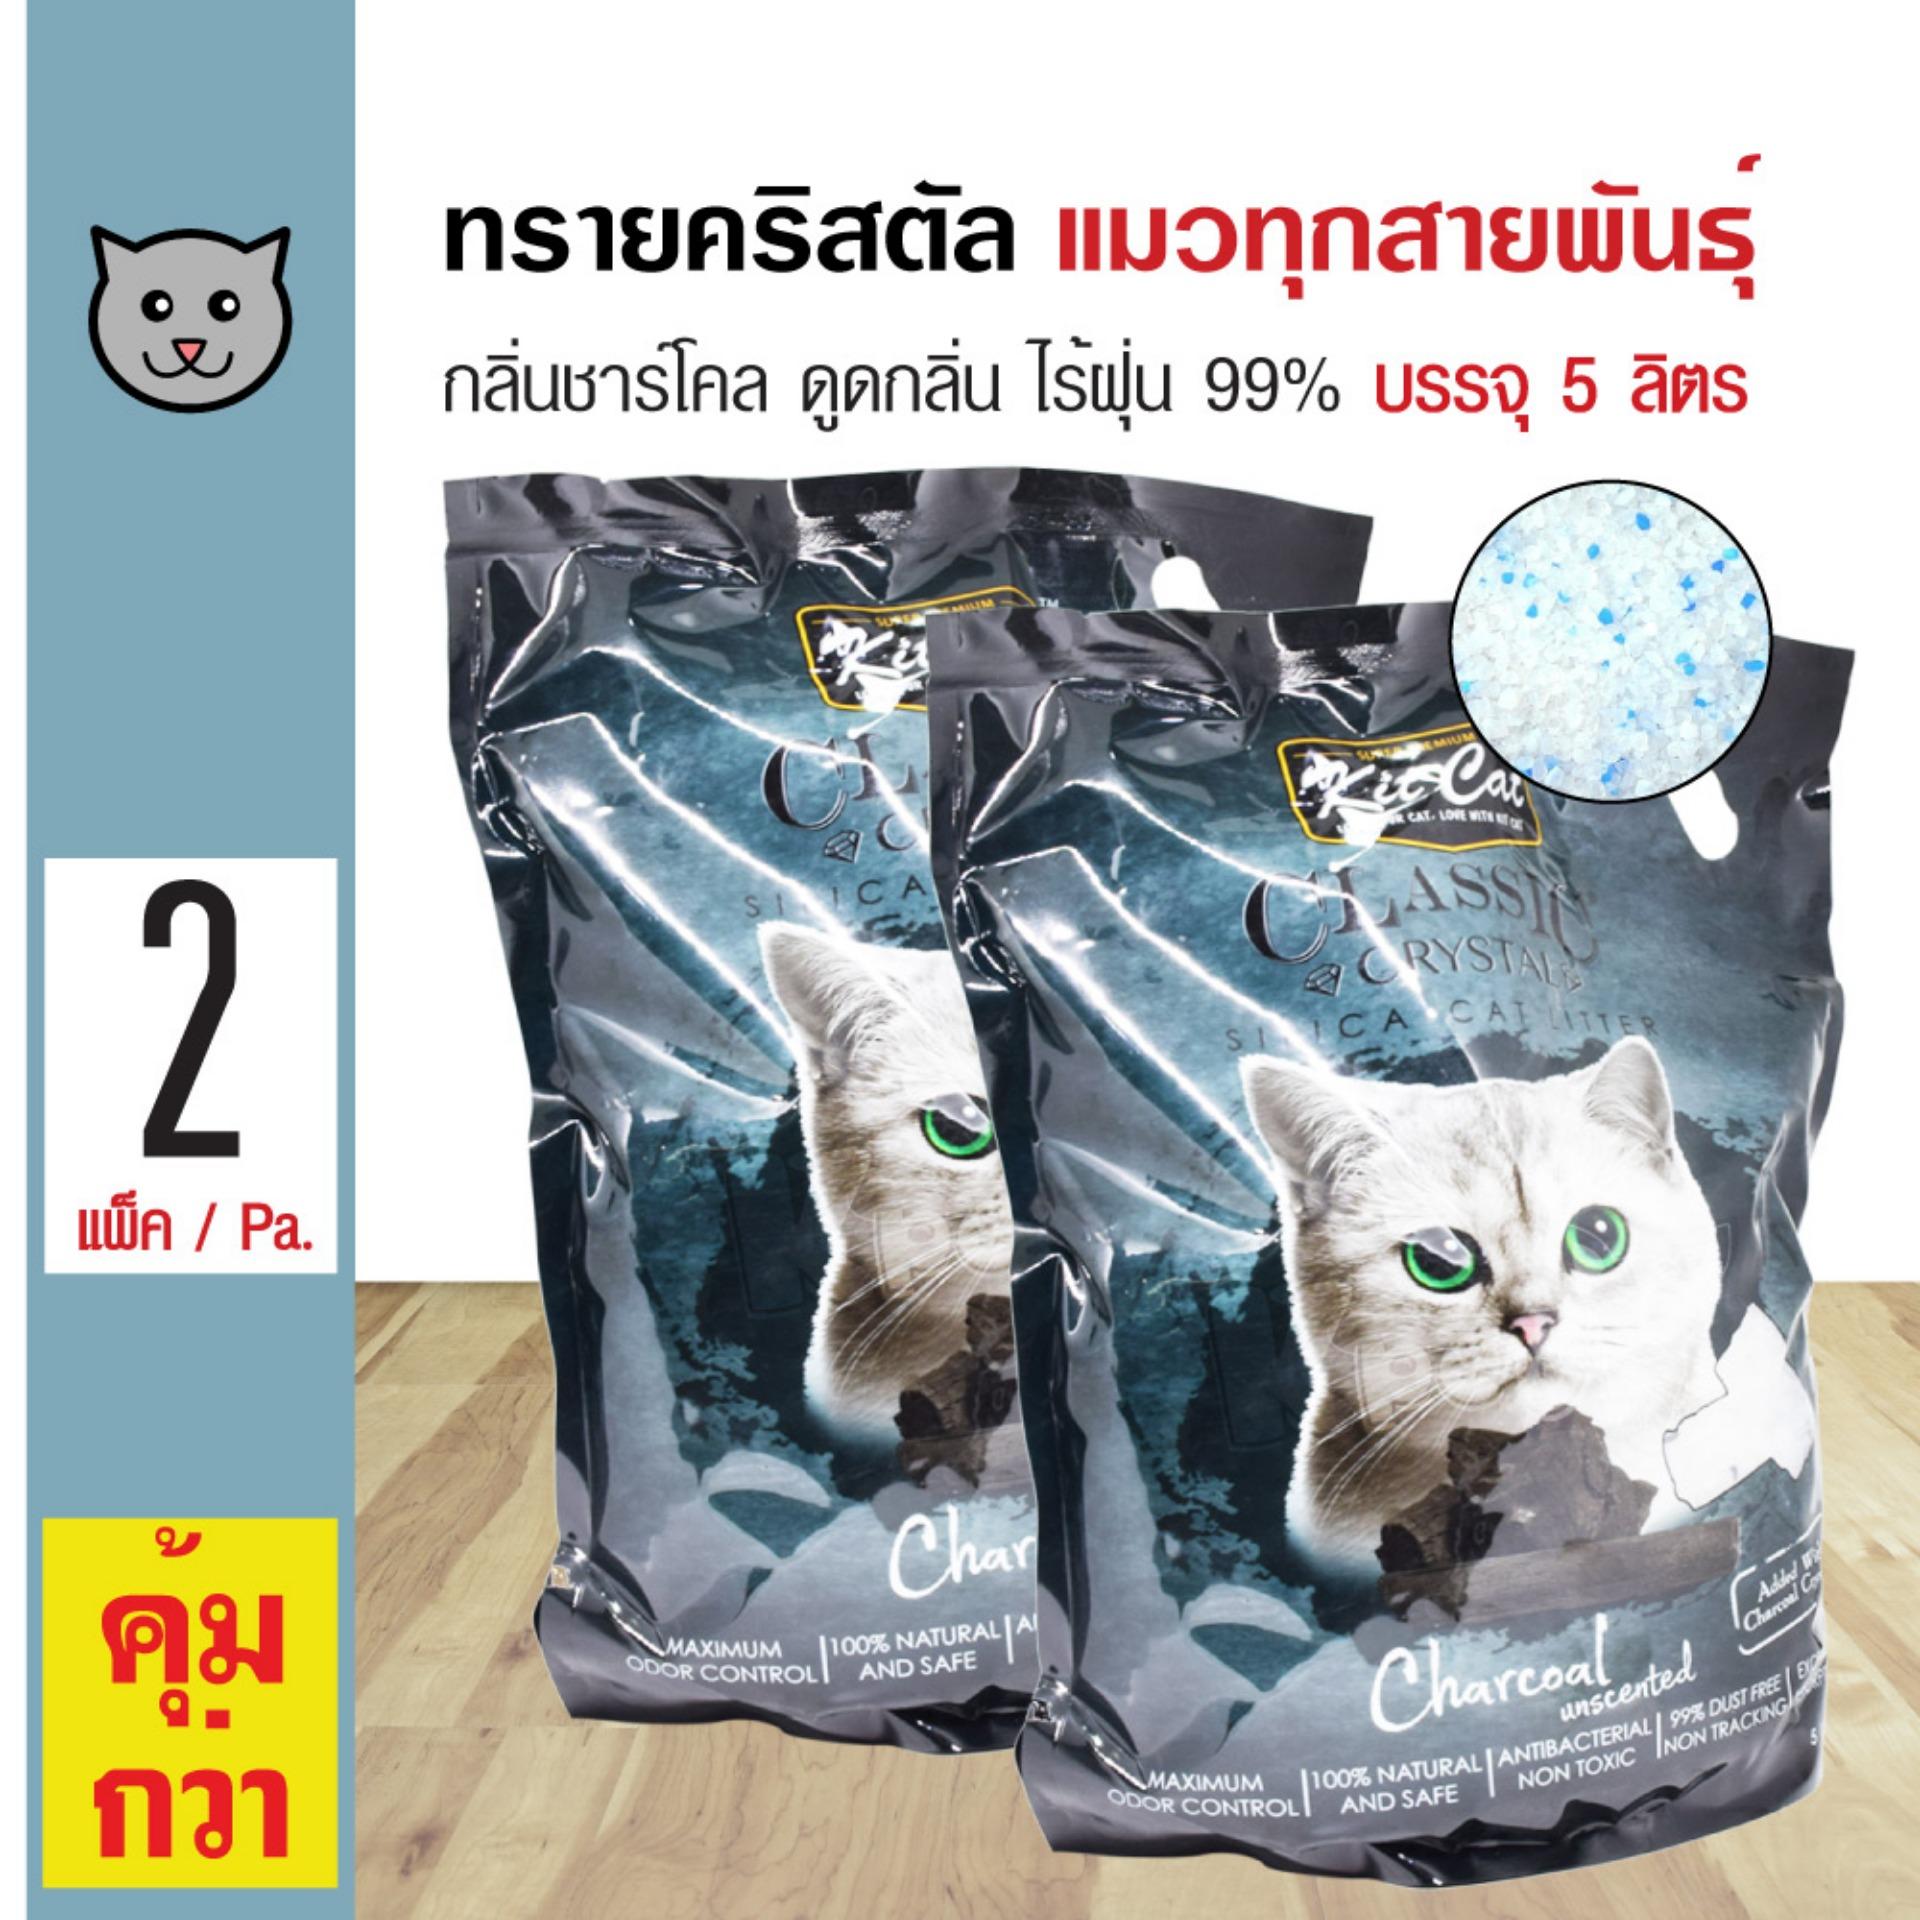 Kit Cat Crystal 5L. ทรายแมวคริสตัล กลิ่นชาร์โคล ทรายแมวไร้ฝุ่น ใช้ได้นาน 40 วัน สำหรับแมวทุกสายพันธุ์ (5 ลิตร/ถุง) x 2 ถุง